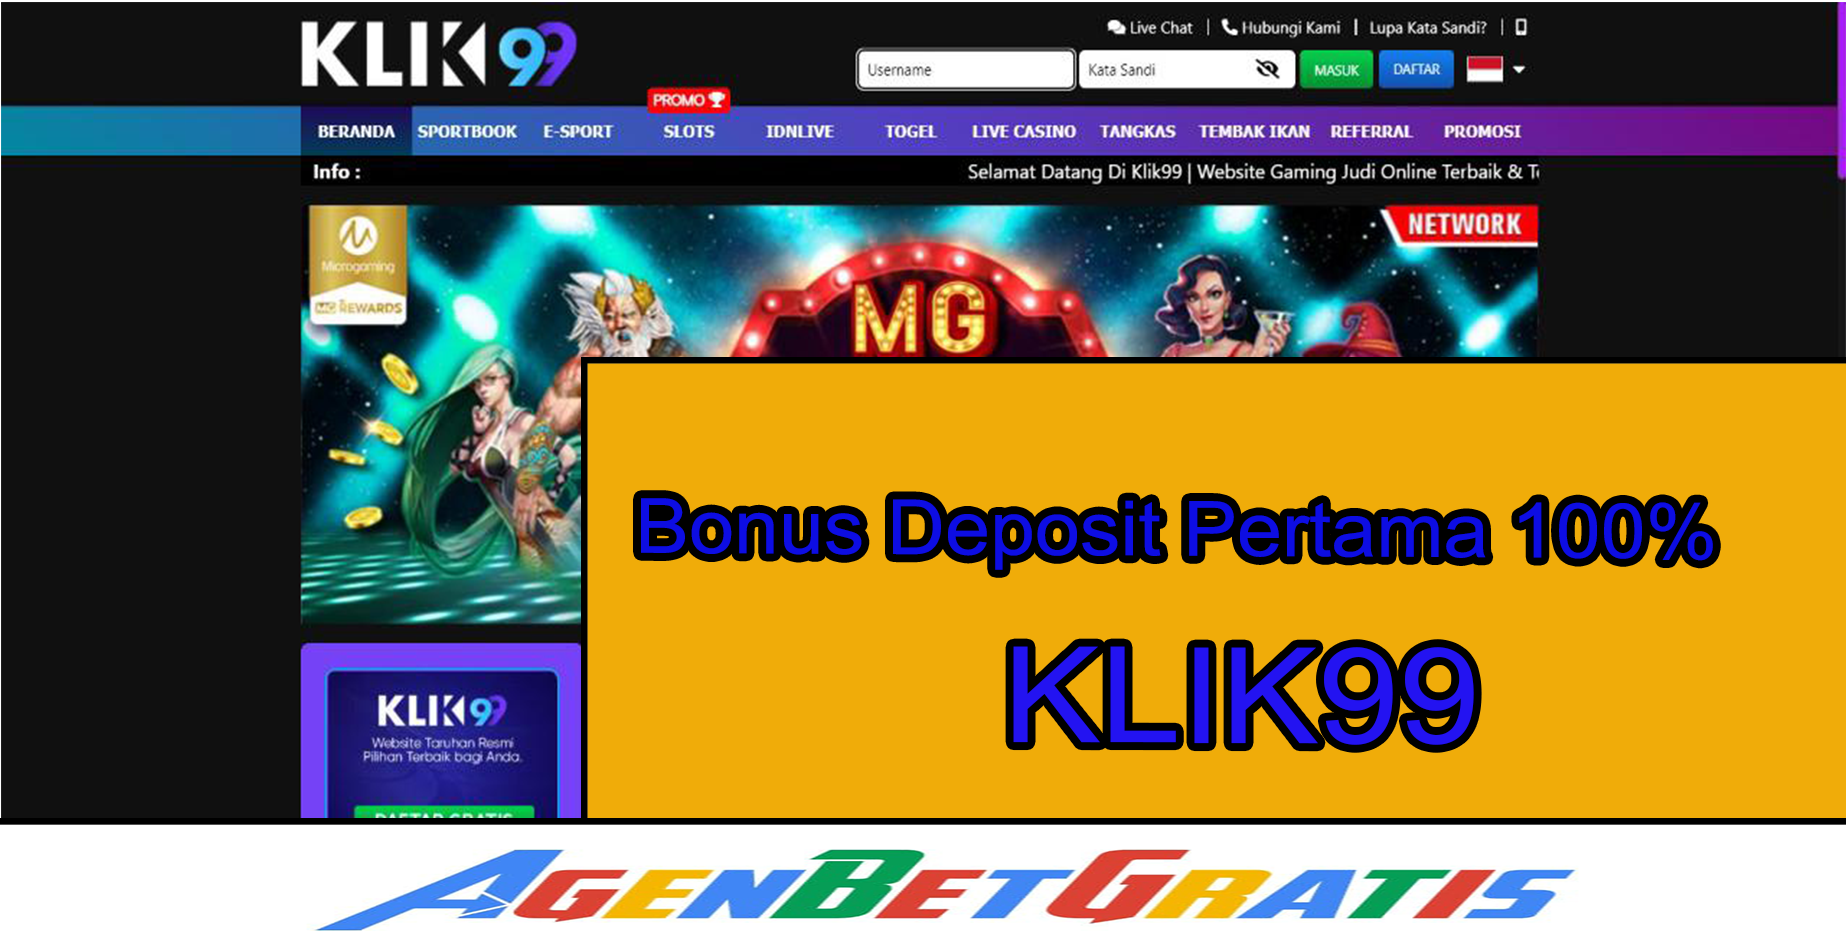 KLIK99 - Bonus Deposit Pertama 100%